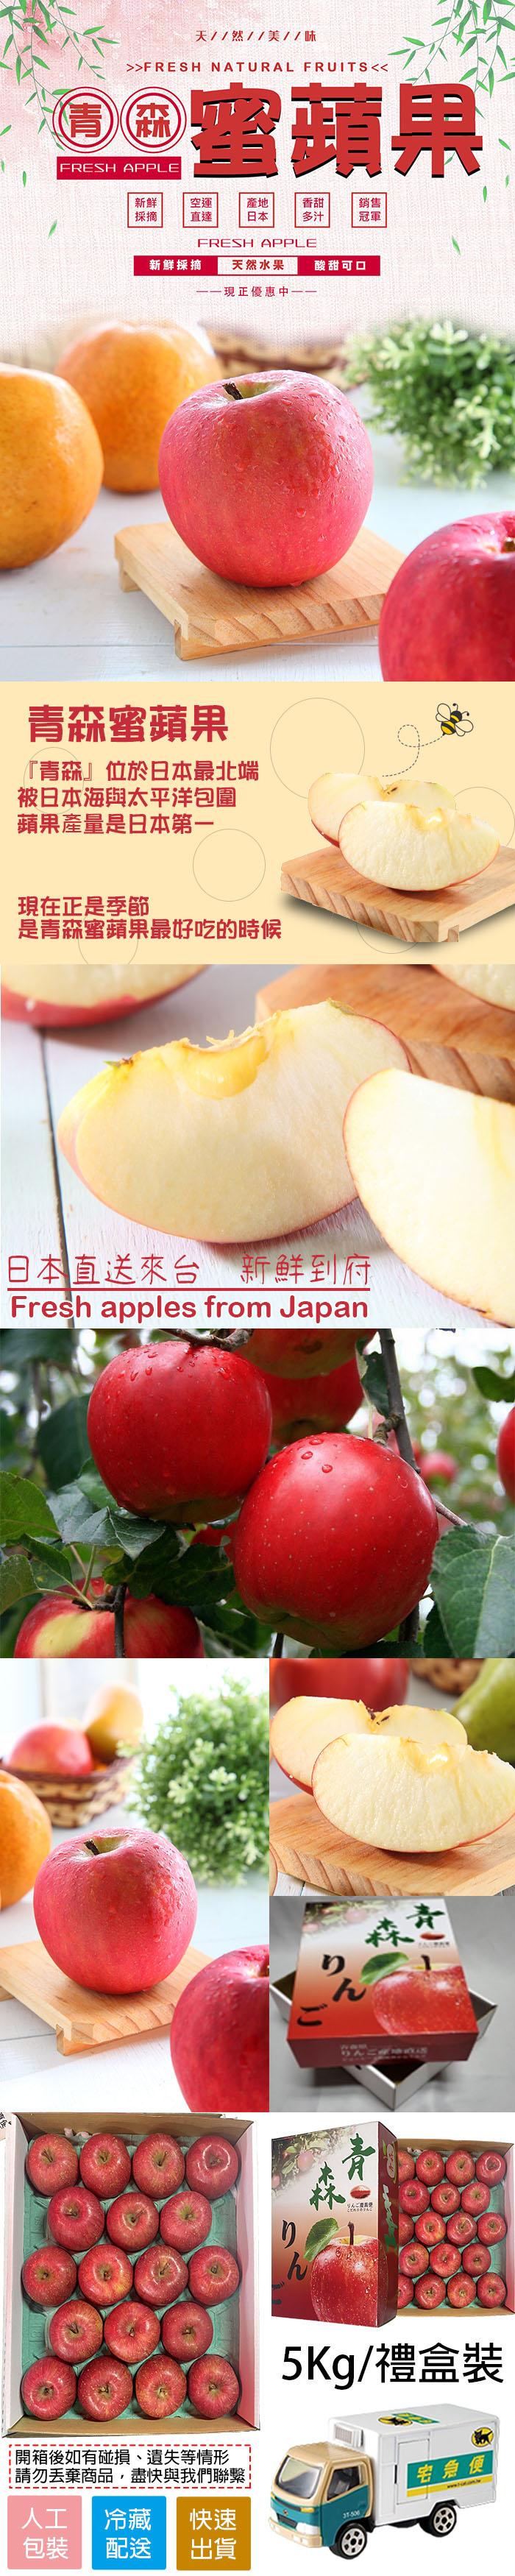 天//然//美//味，O 雪蘋果，新鮮採摘 天然水果，——現正優惠中——，青森蜜蘋果，青森位於日本最北端，被日本海與太平洋包圍，蘋果產量是日本第一，現在正是季節，是青森蜜蘋果最好吃的時候，開箱後如有碰損、遺失等情形，棄商品,盡快與我們聯繫，包裝 配送